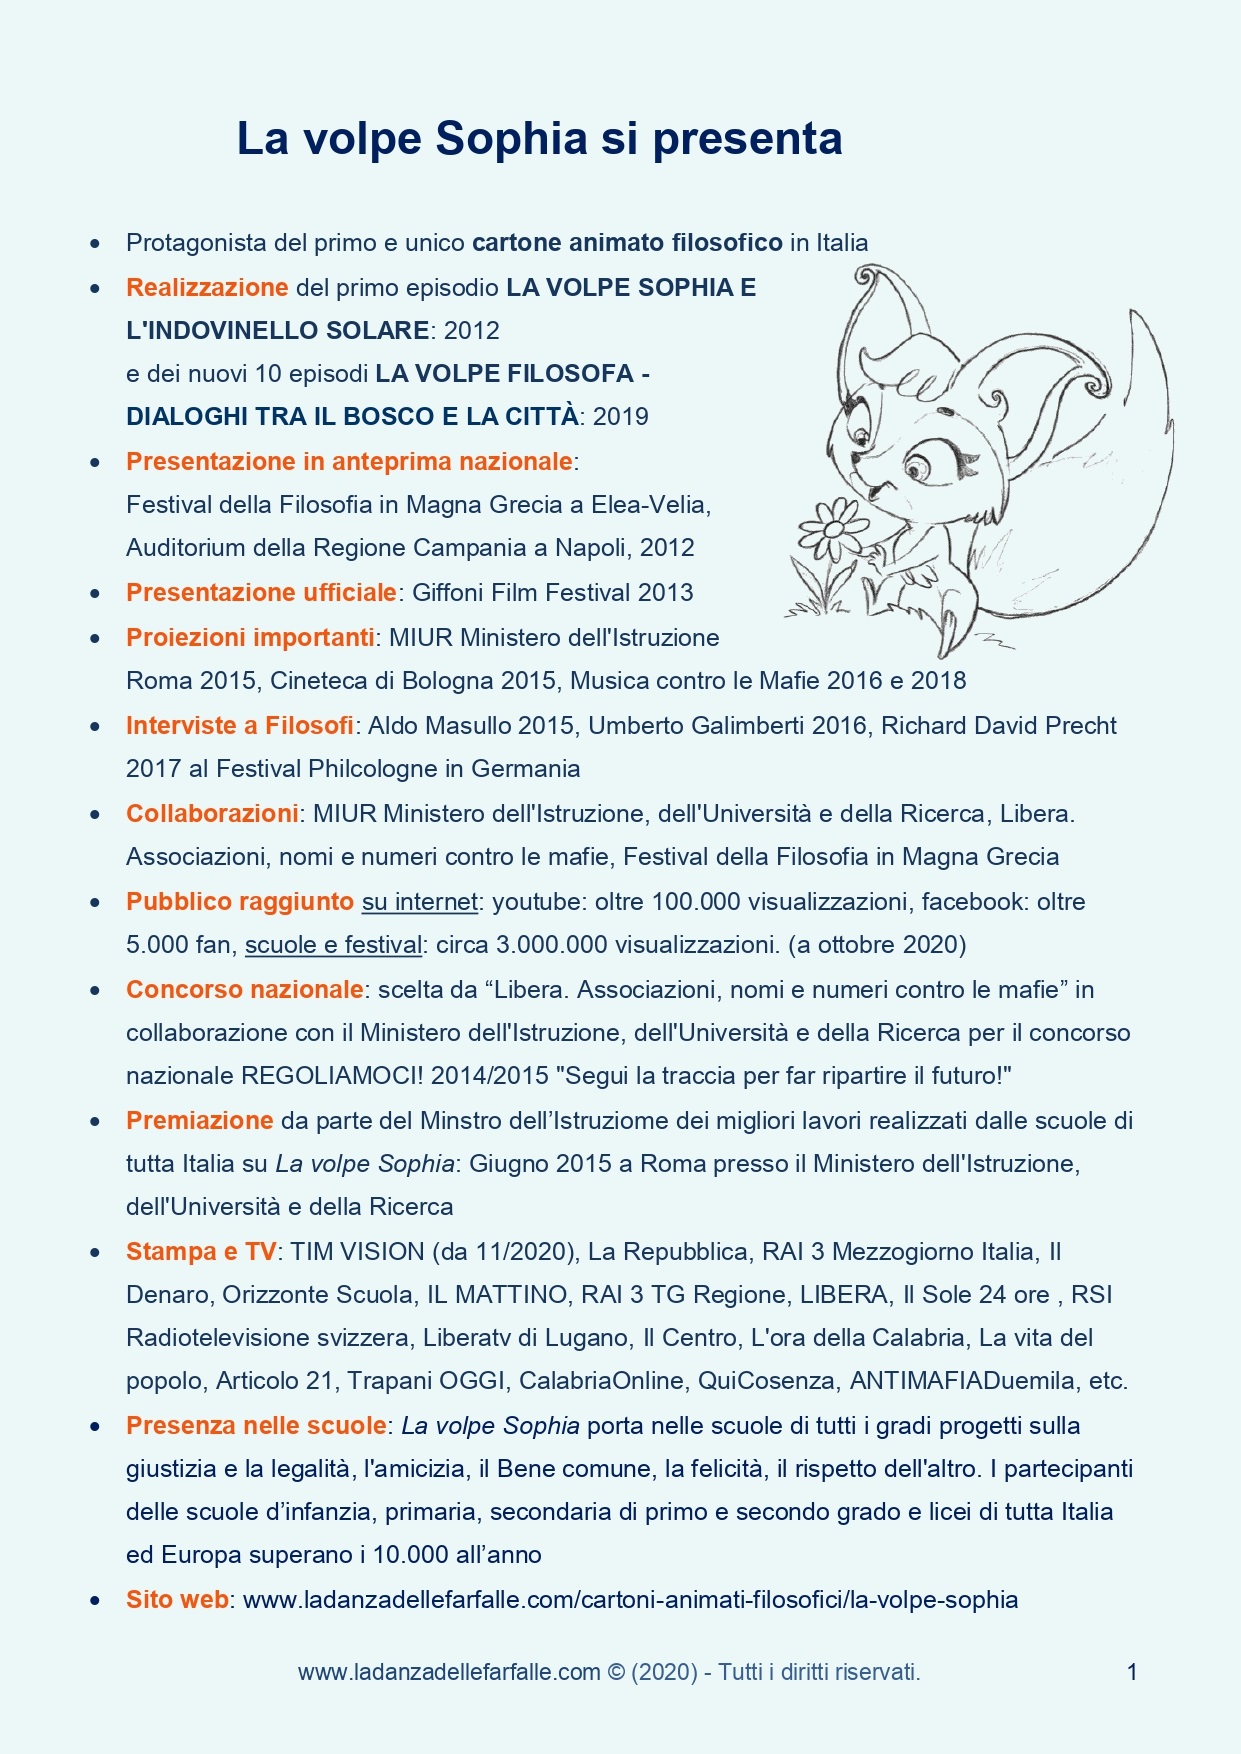 La volpe Sophia di Andrea Lucisano si presenta 2020 pagina 1 sito